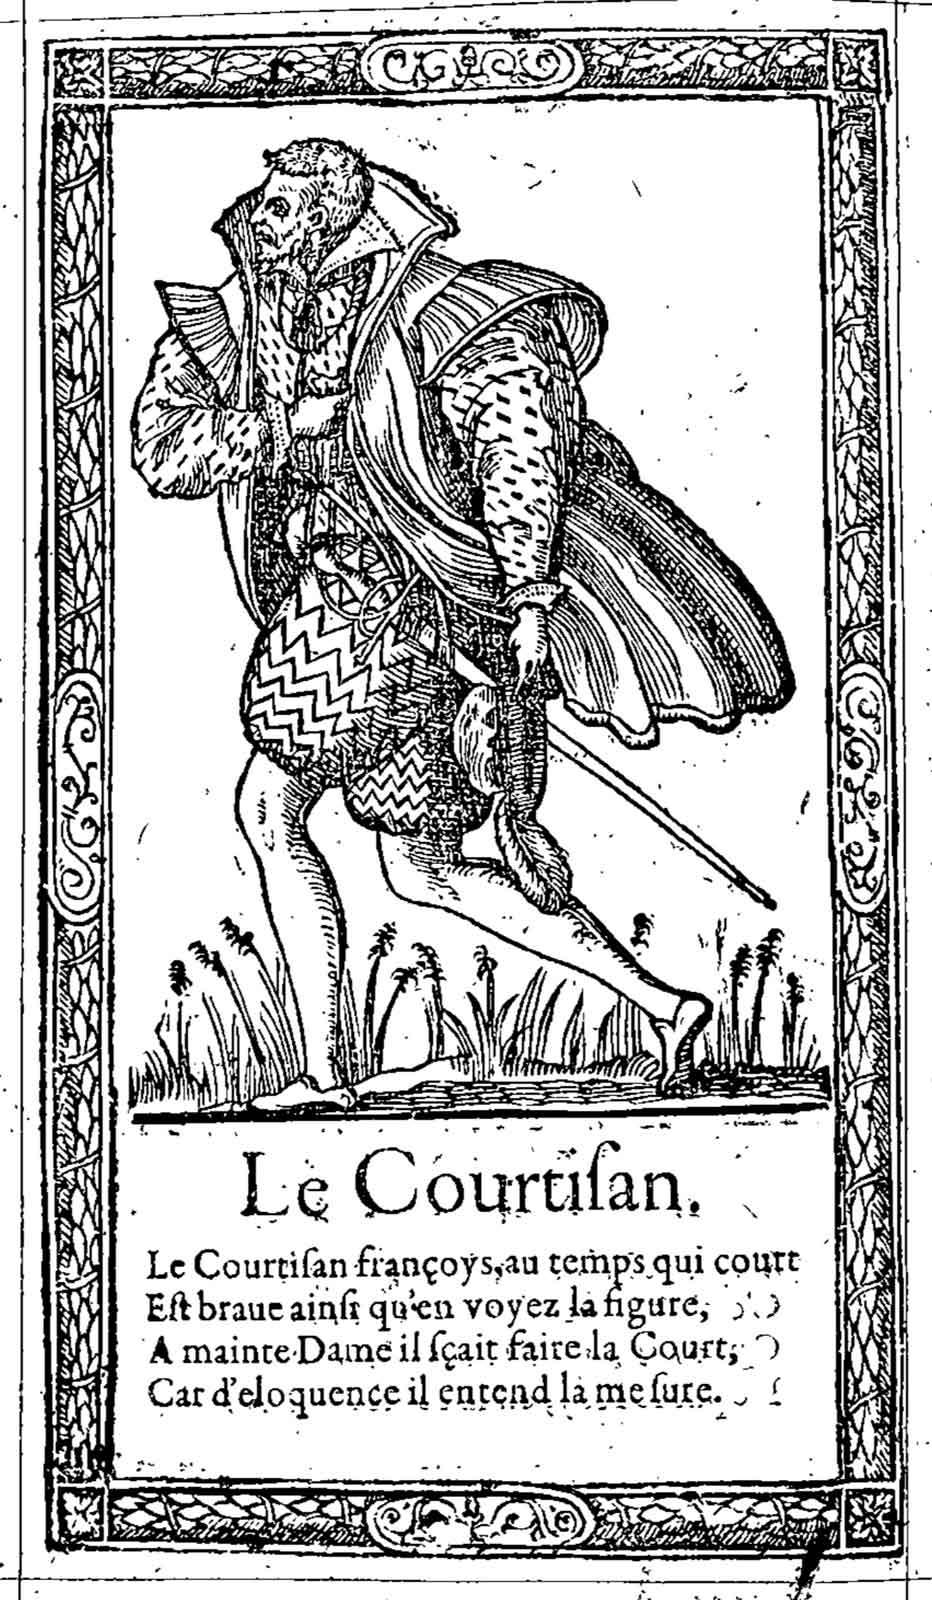 Le Courtisan. Desprez, Recueil de la diversité des habits (1564)